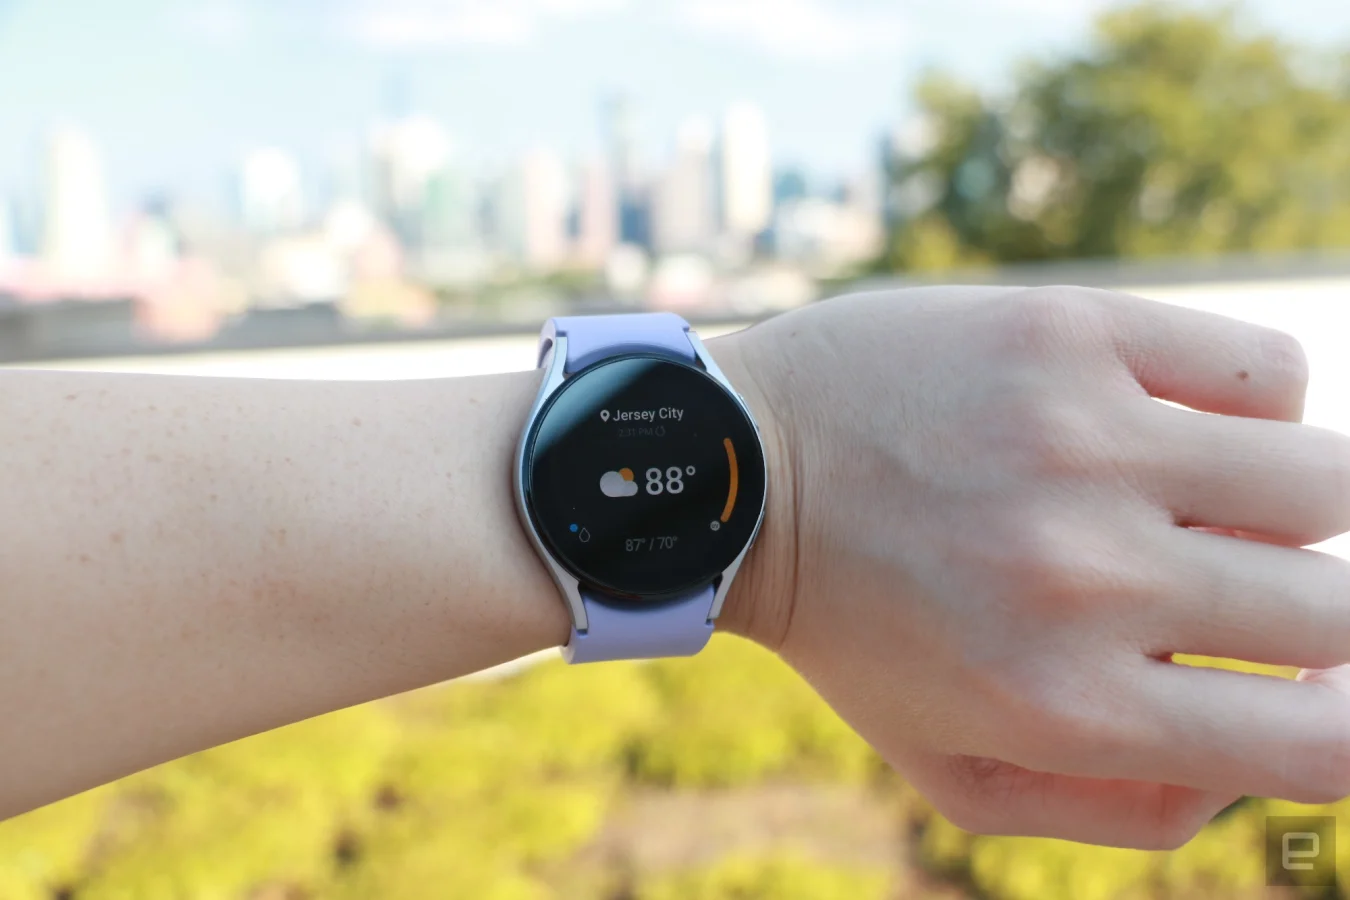 Die Samsung Galaxy Watch 5 am Handgelenk zeigt die Wetter-App.  Oben steht Jersey City, gefolgt von 88 Grad in größerer Schrift, die den größten Teil der Seite einnehmen, und einer Wolke mit Sonnensymbol auf der linken Seite.